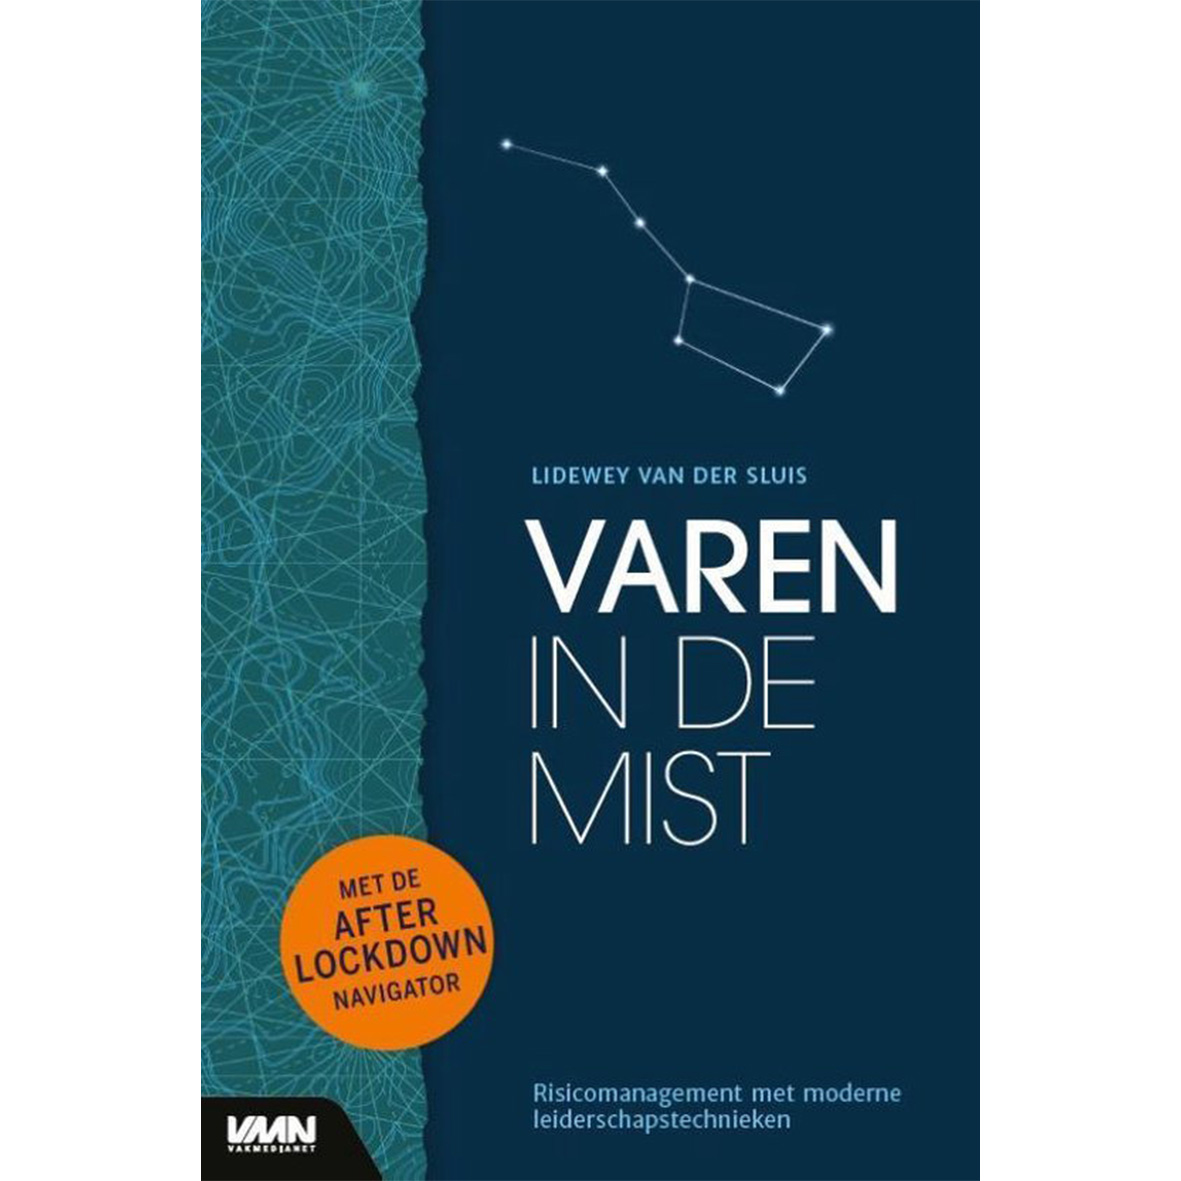 Varen_in_de_mist